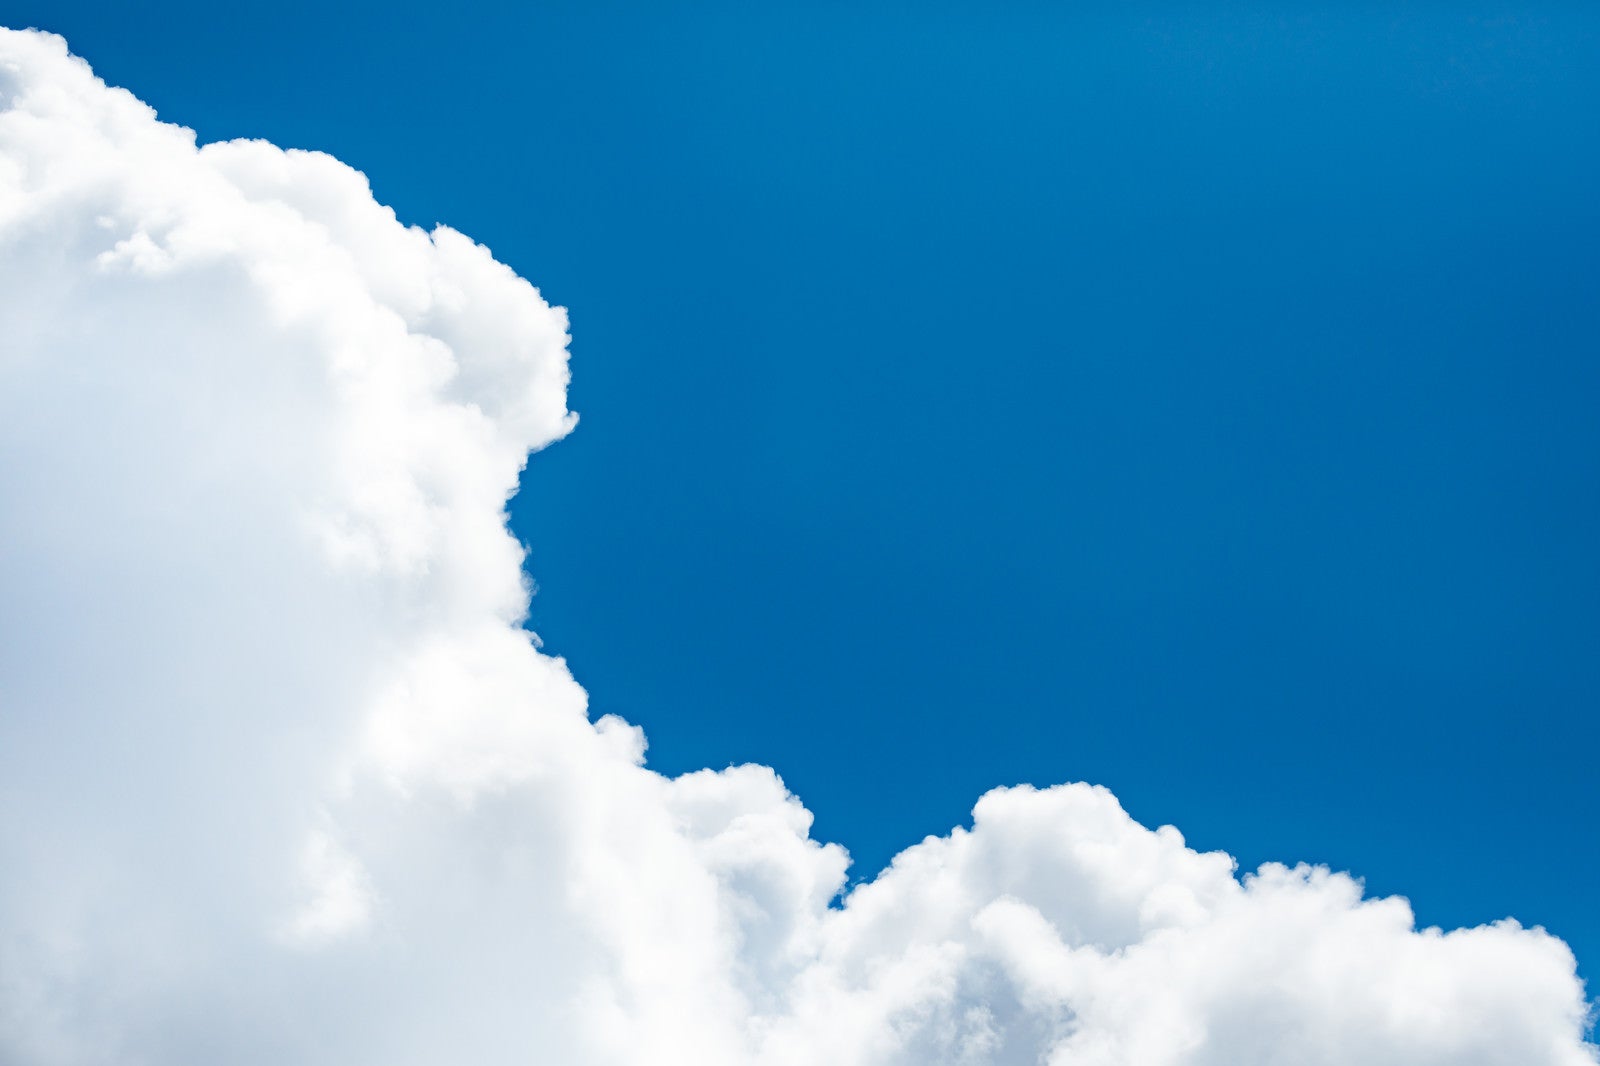 「絵に書いたような青空雲」の写真